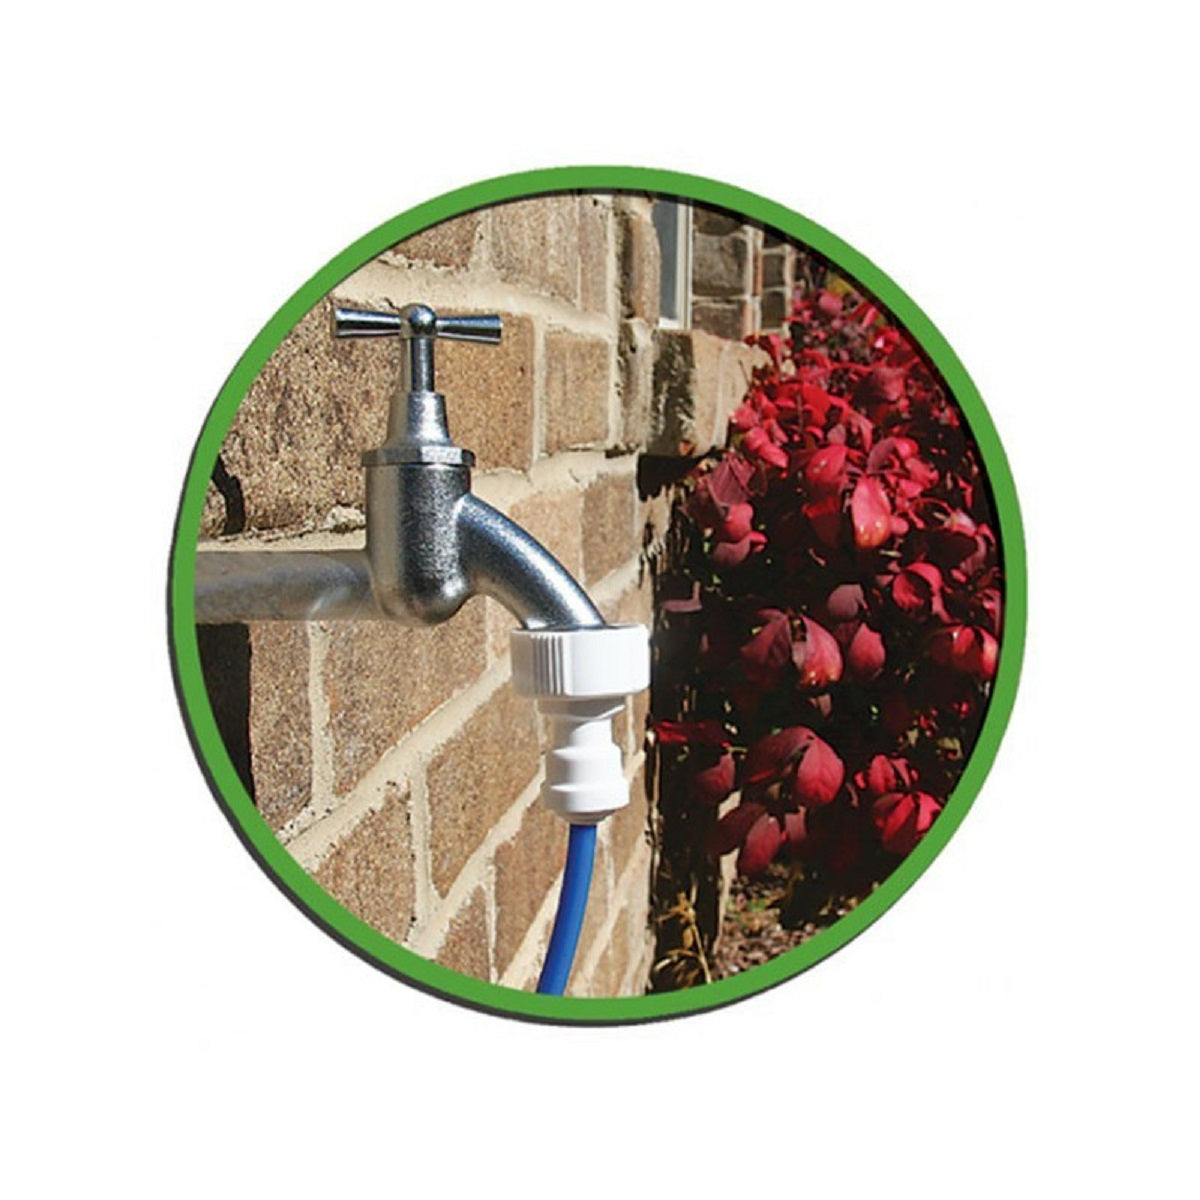 Système osmoseur inverse GrowMax Water Eco Grow 240 litre par heure